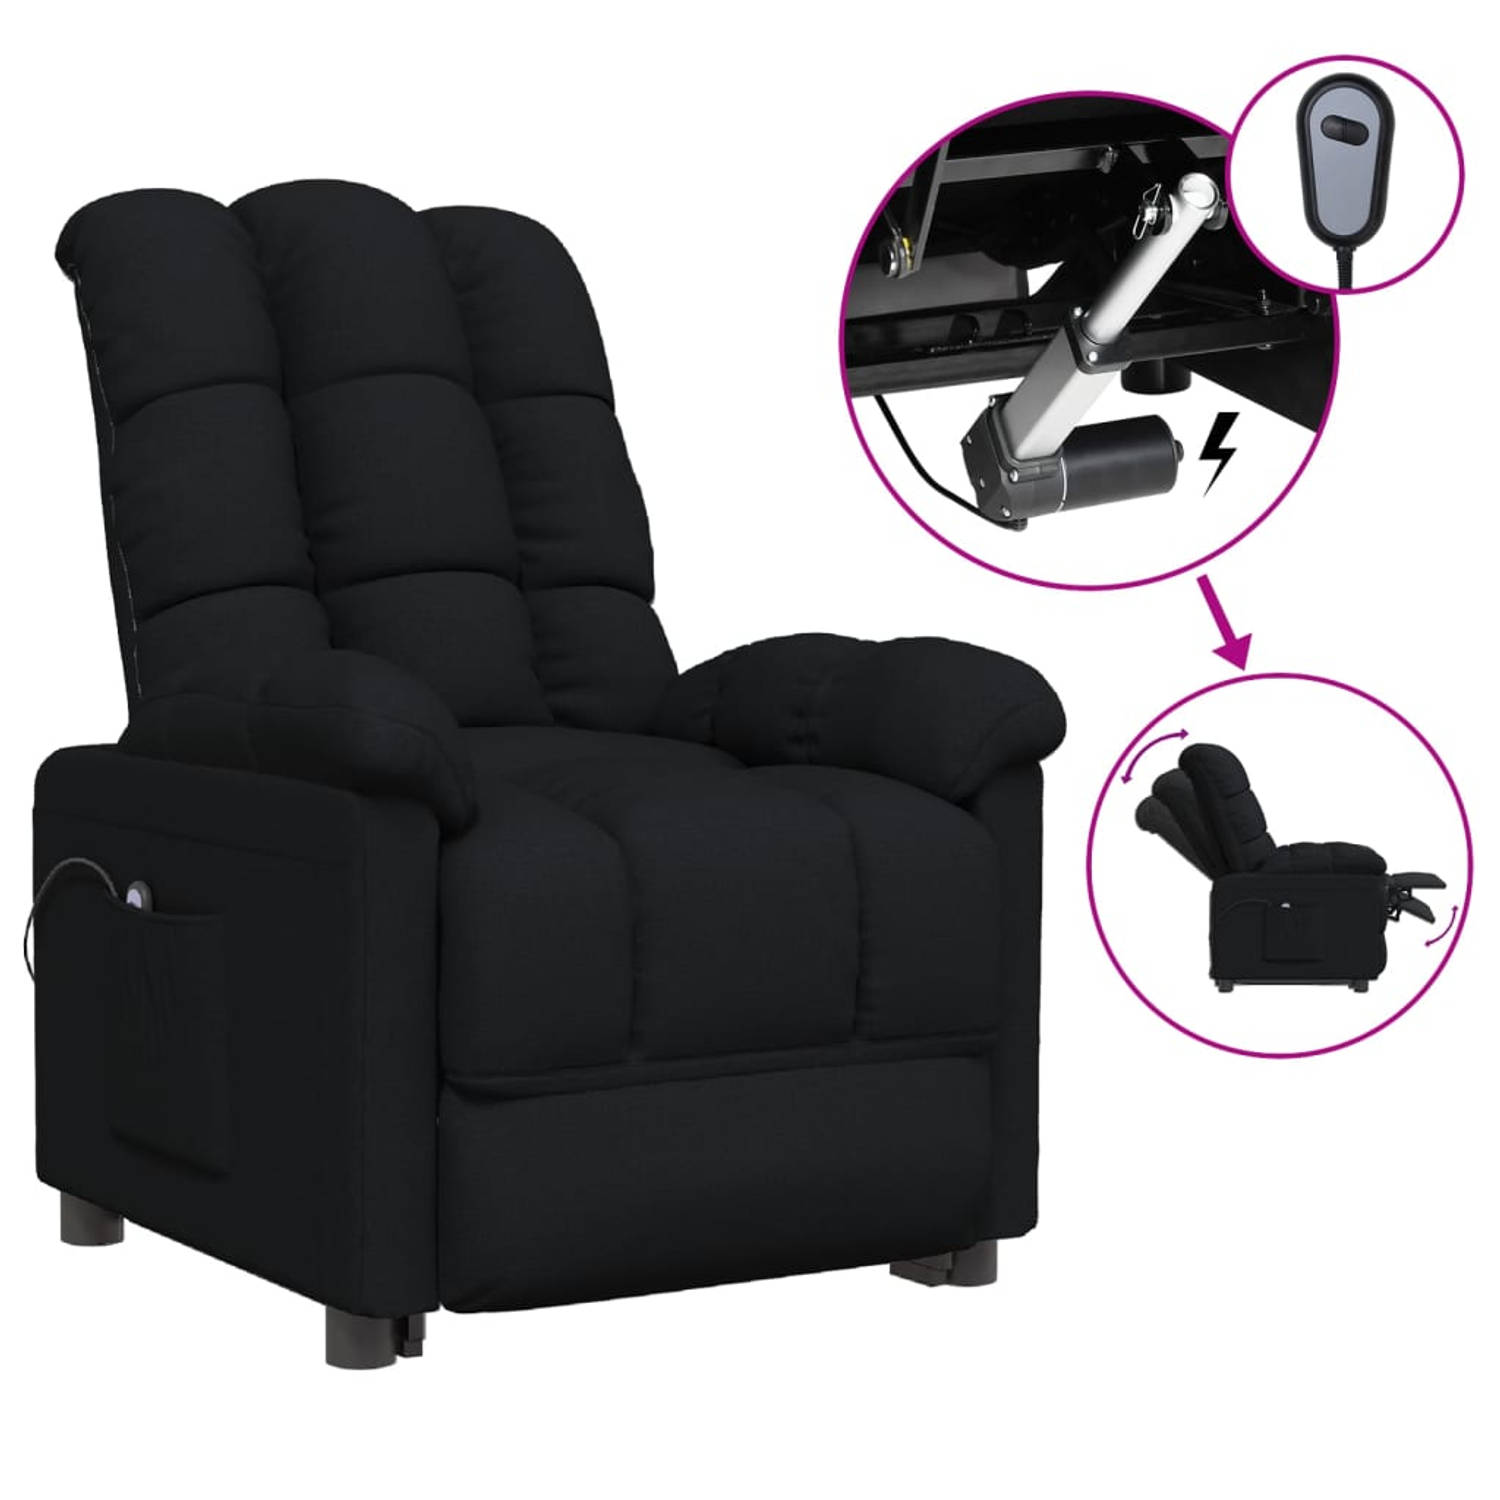 The Living Store Elektrisch verstelbare fauteuil - TV stoel 74x99x102cm - Zwart stof 100% polyester